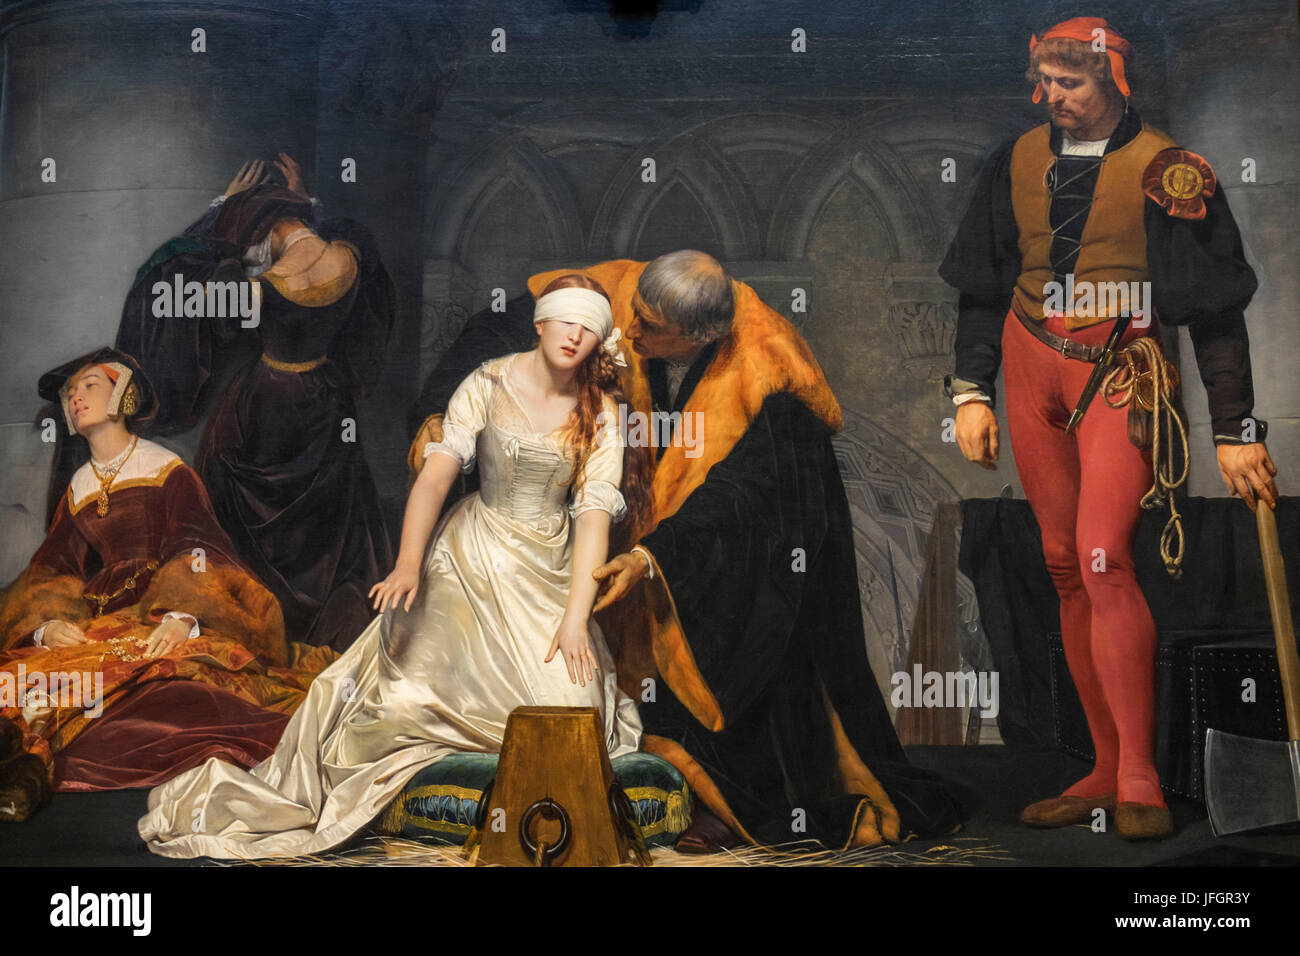 Inglaterra, Londres, Trafalgar Square, la National Gallery, retrato de la ejecución de Juana Grey por Paul Delaroche Foto de stock